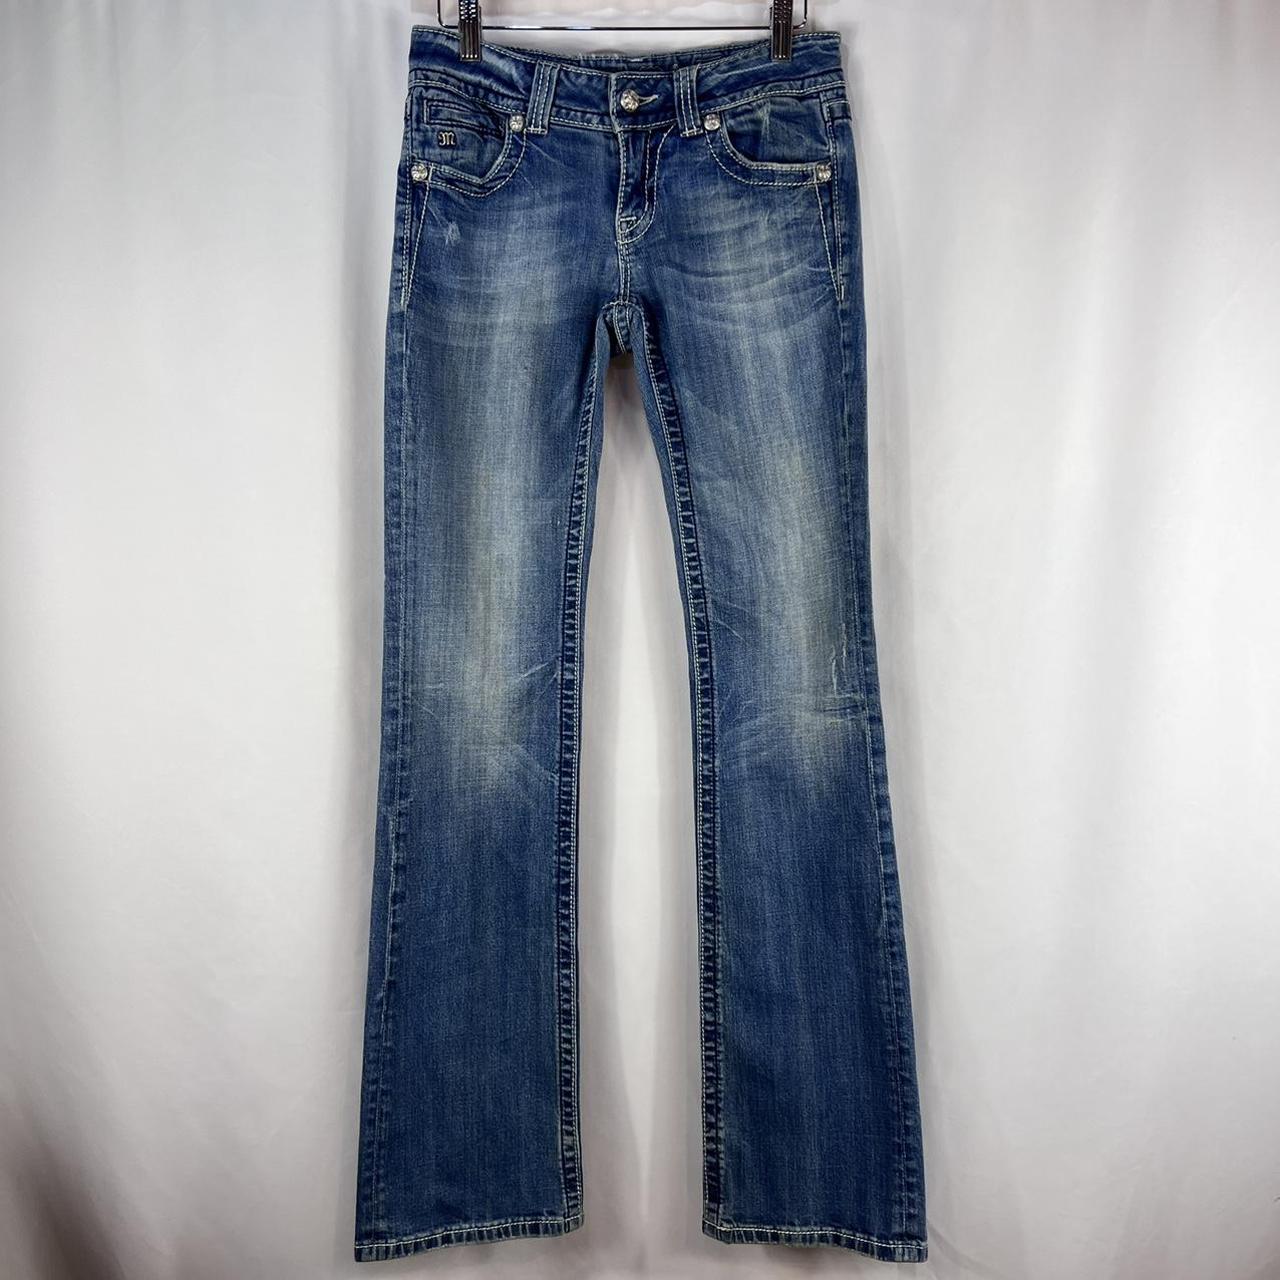 Vintage Y2K Blue Denim Rhinestoned Miss Me Jeans -... - Depop